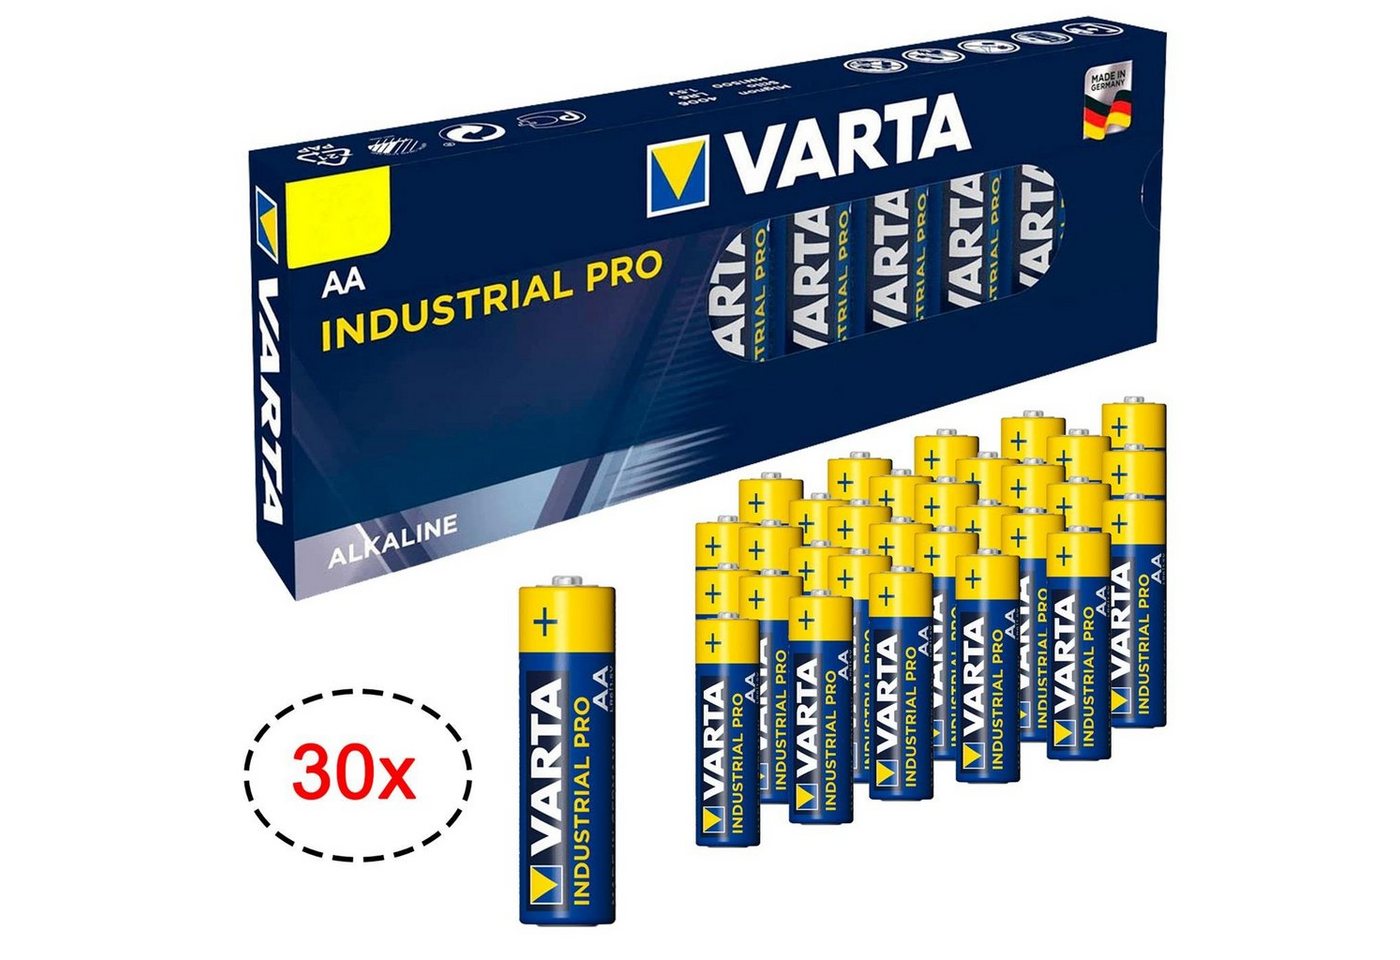 VARTA 30er Pack AA Industrial Alkaline Mignon Batterie, (1,5 V, 30 St), Made in Germany Batterien 1,5V für Taschenlampe Spielzeug Wand Uhr von VARTA